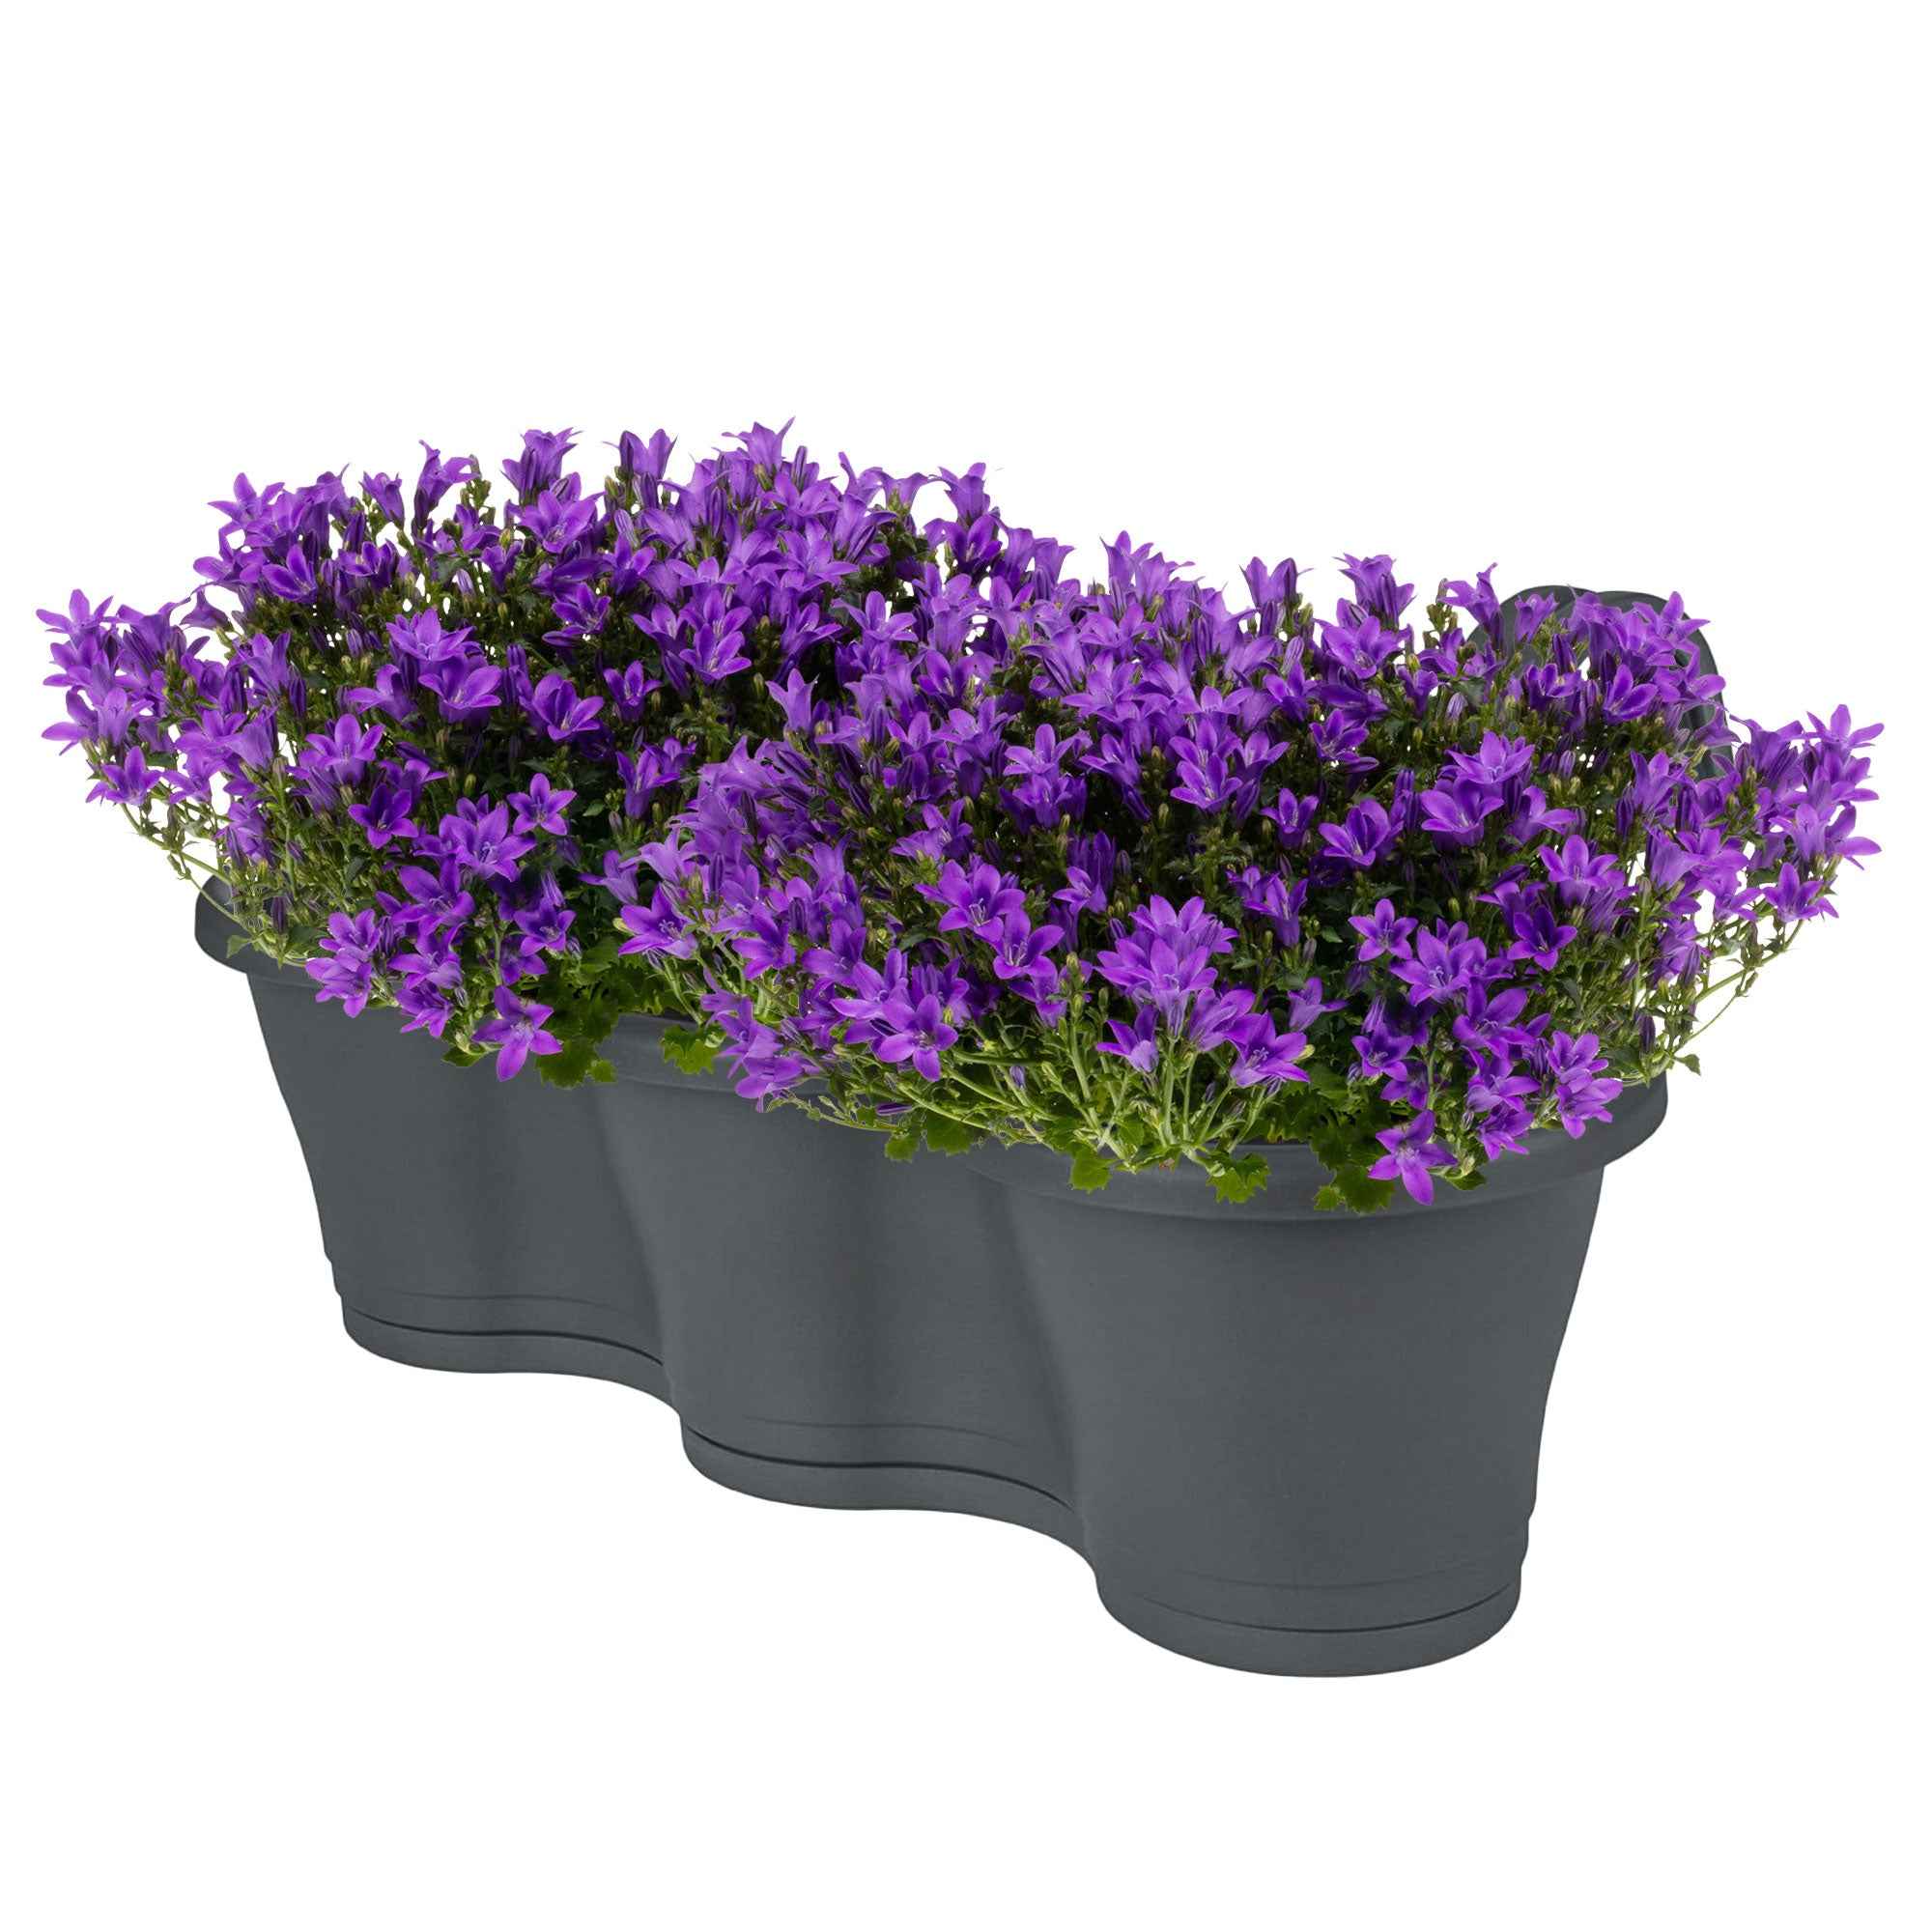 Achetez maintenant une plante vivace 3x Campanule Campanula 'Ambella  Intense Purple' violet avec jardinière anthracite | Bakker.com